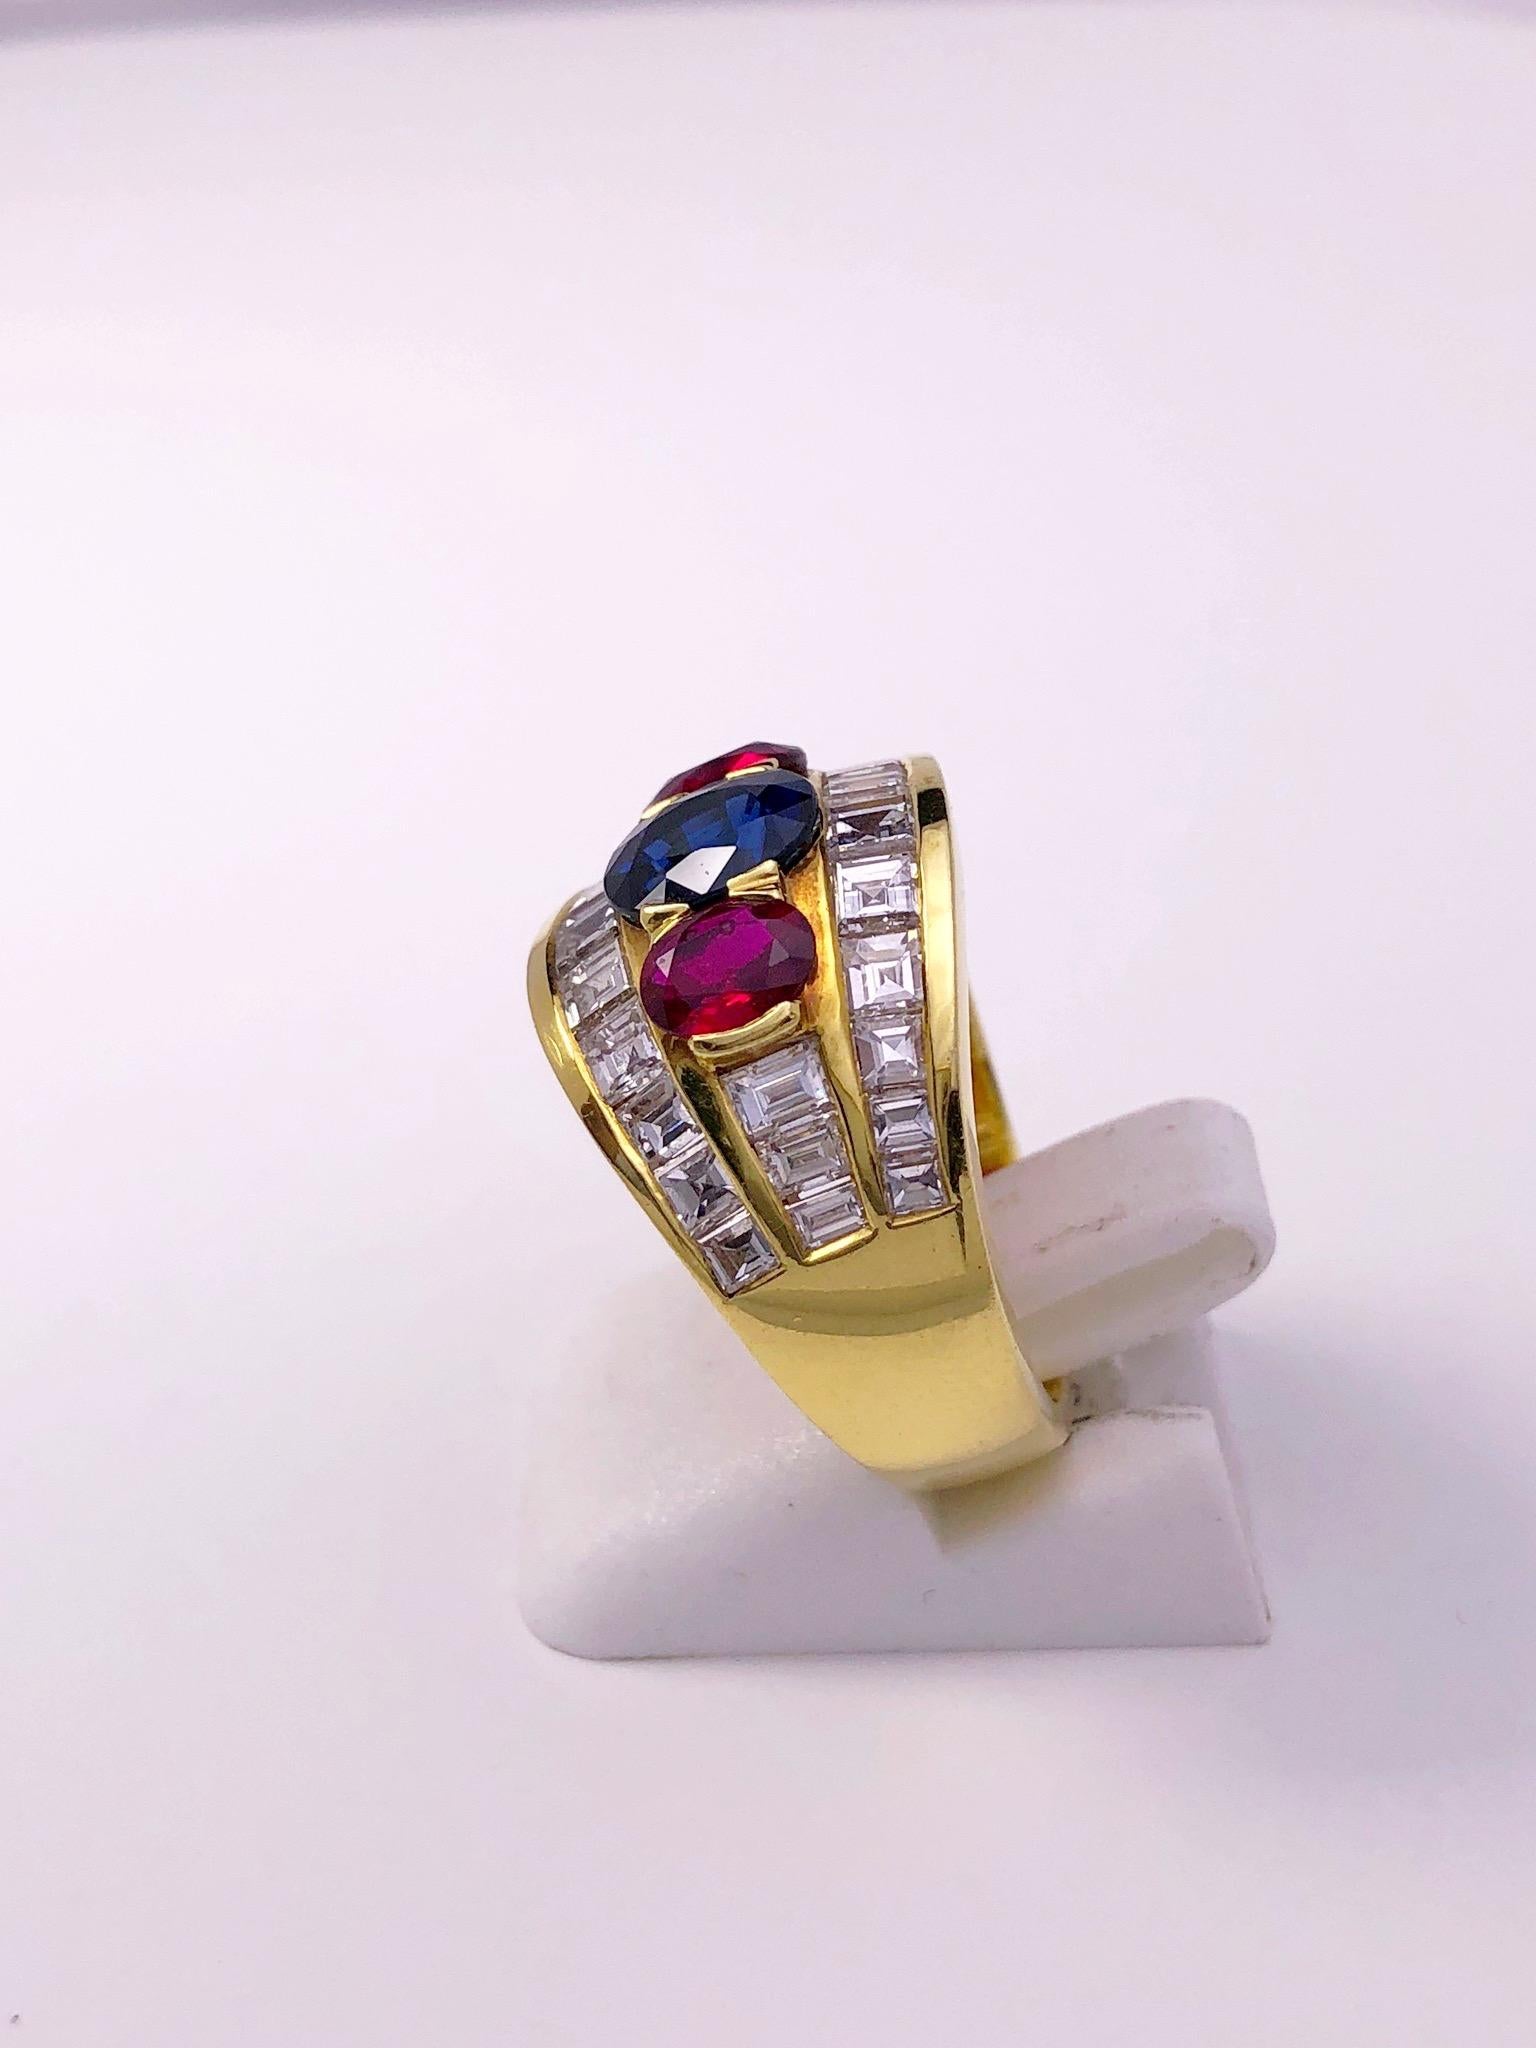 Dieser Ring aus 18 Kt. Gelbgold enthält einen ovalen blauen Saphir, der auf beiden Seiten von ovalen Rubinen flankiert wird. Die 3 Steine sind in 3 Reihen von Diamanten im Kaliberschnitt (quadratisch) gefasst.
Saphir 1,53 Karat
Rubine 0,92